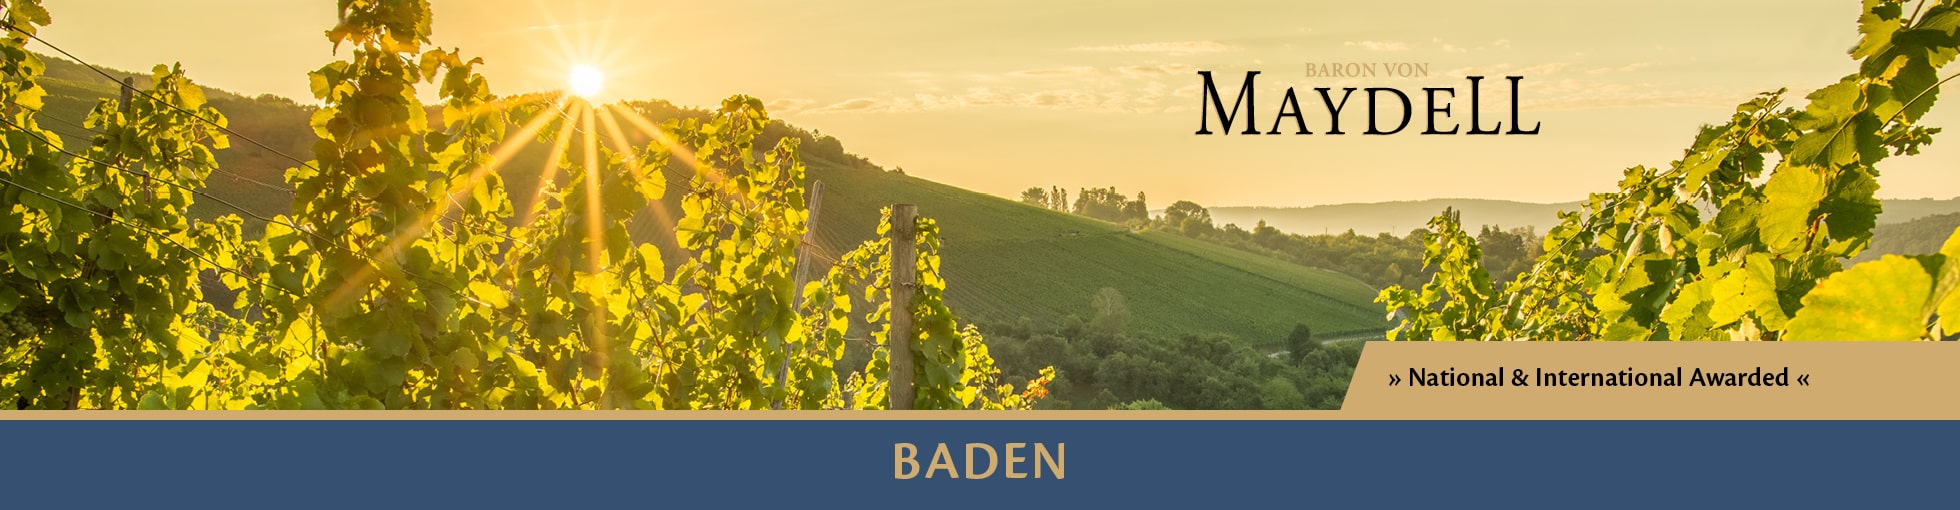 Baron von Maydell - Weine aus Baden